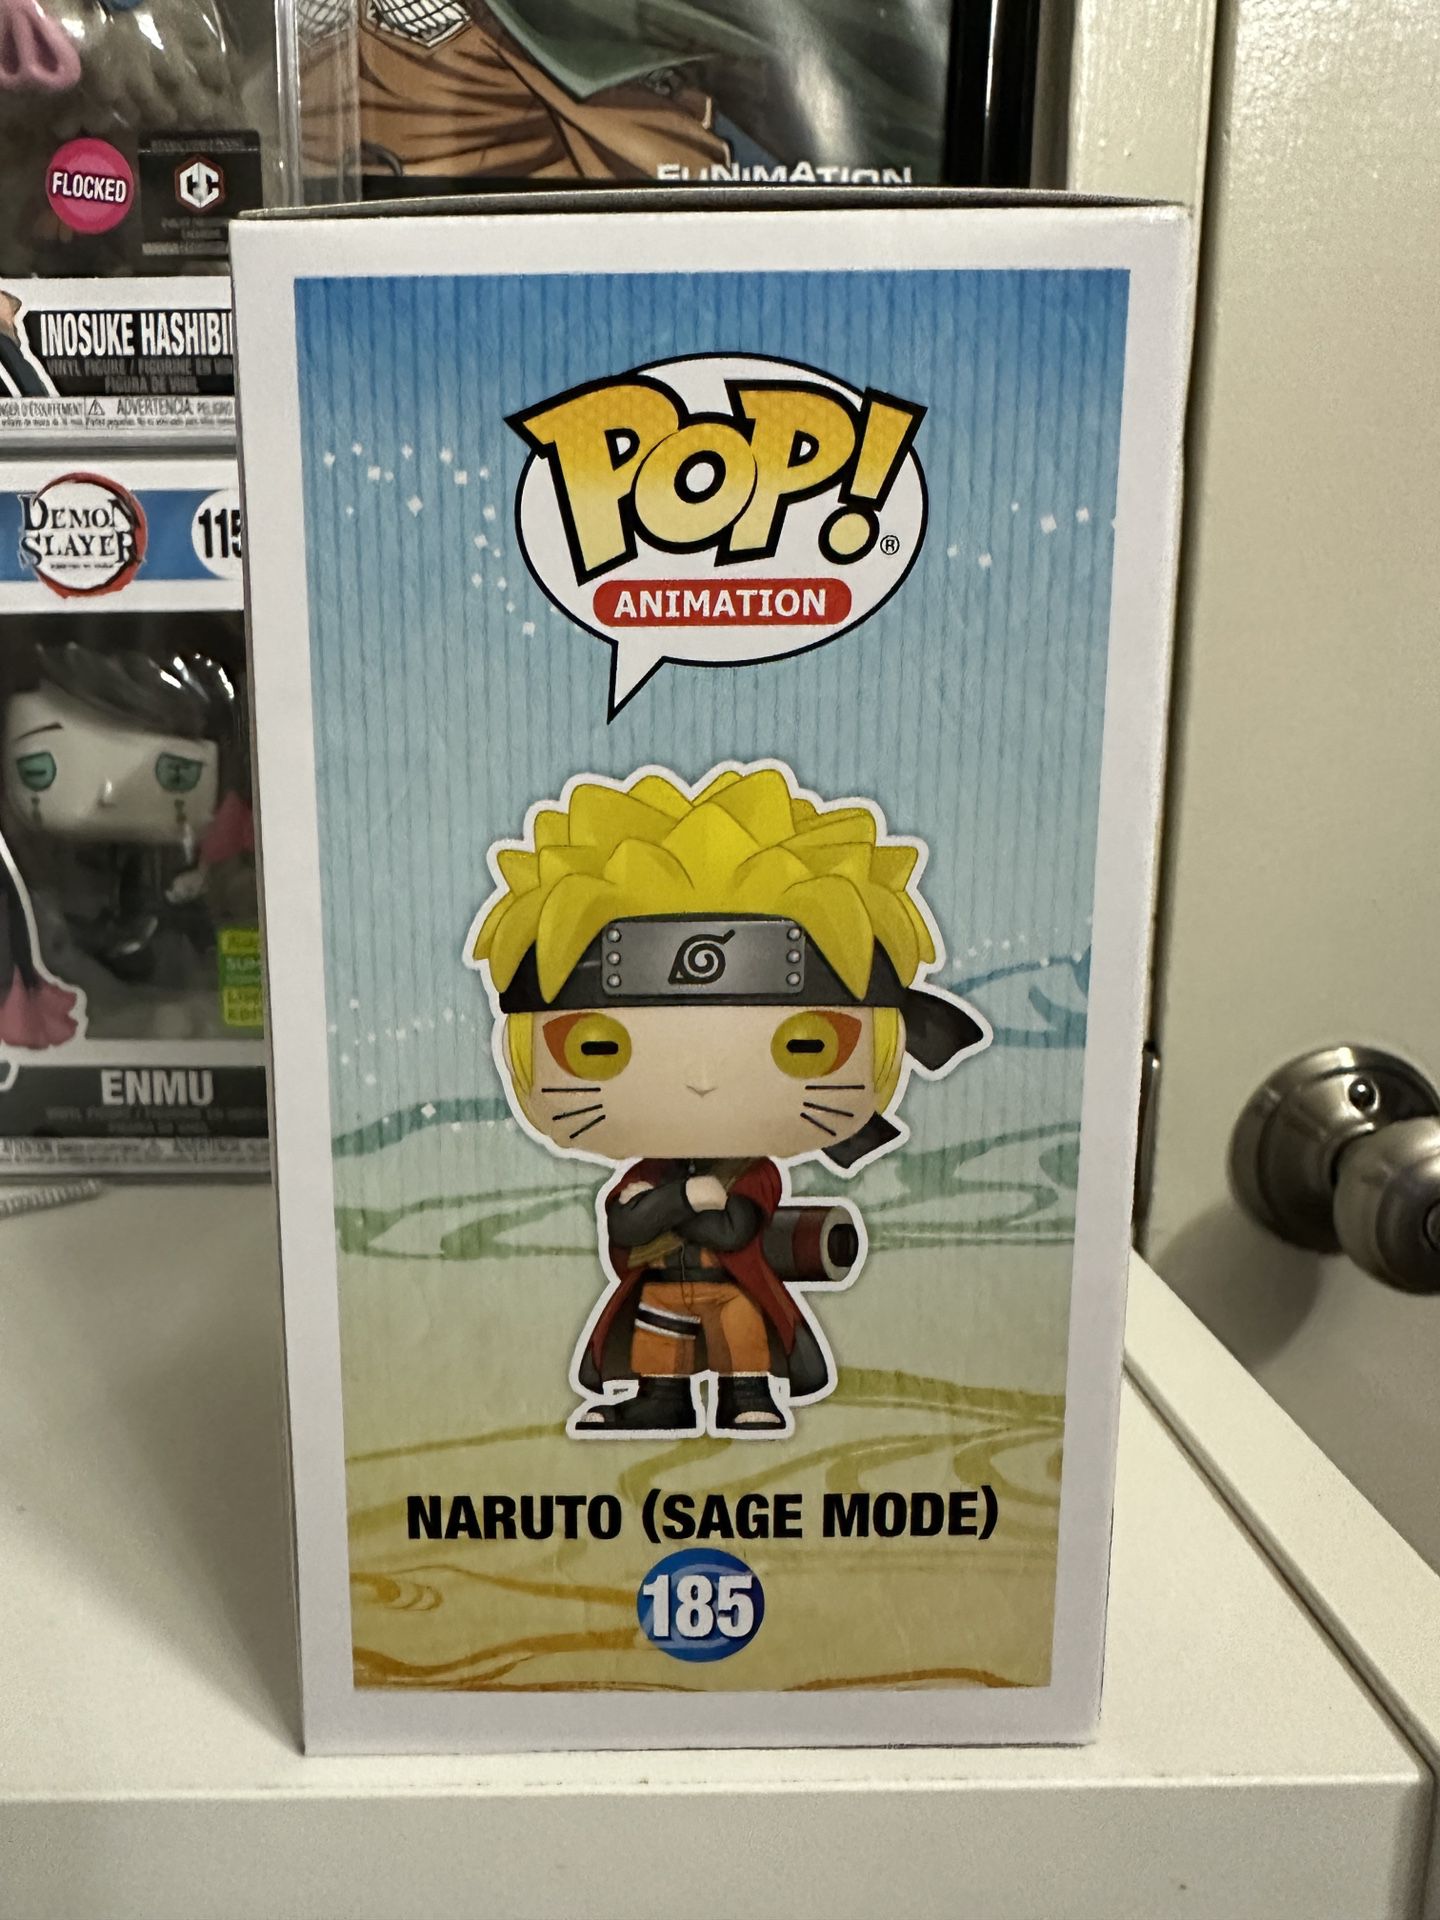 Gaara (Naruto) Pop! #728 for Sale in Los Angeles, CA - OfferUp